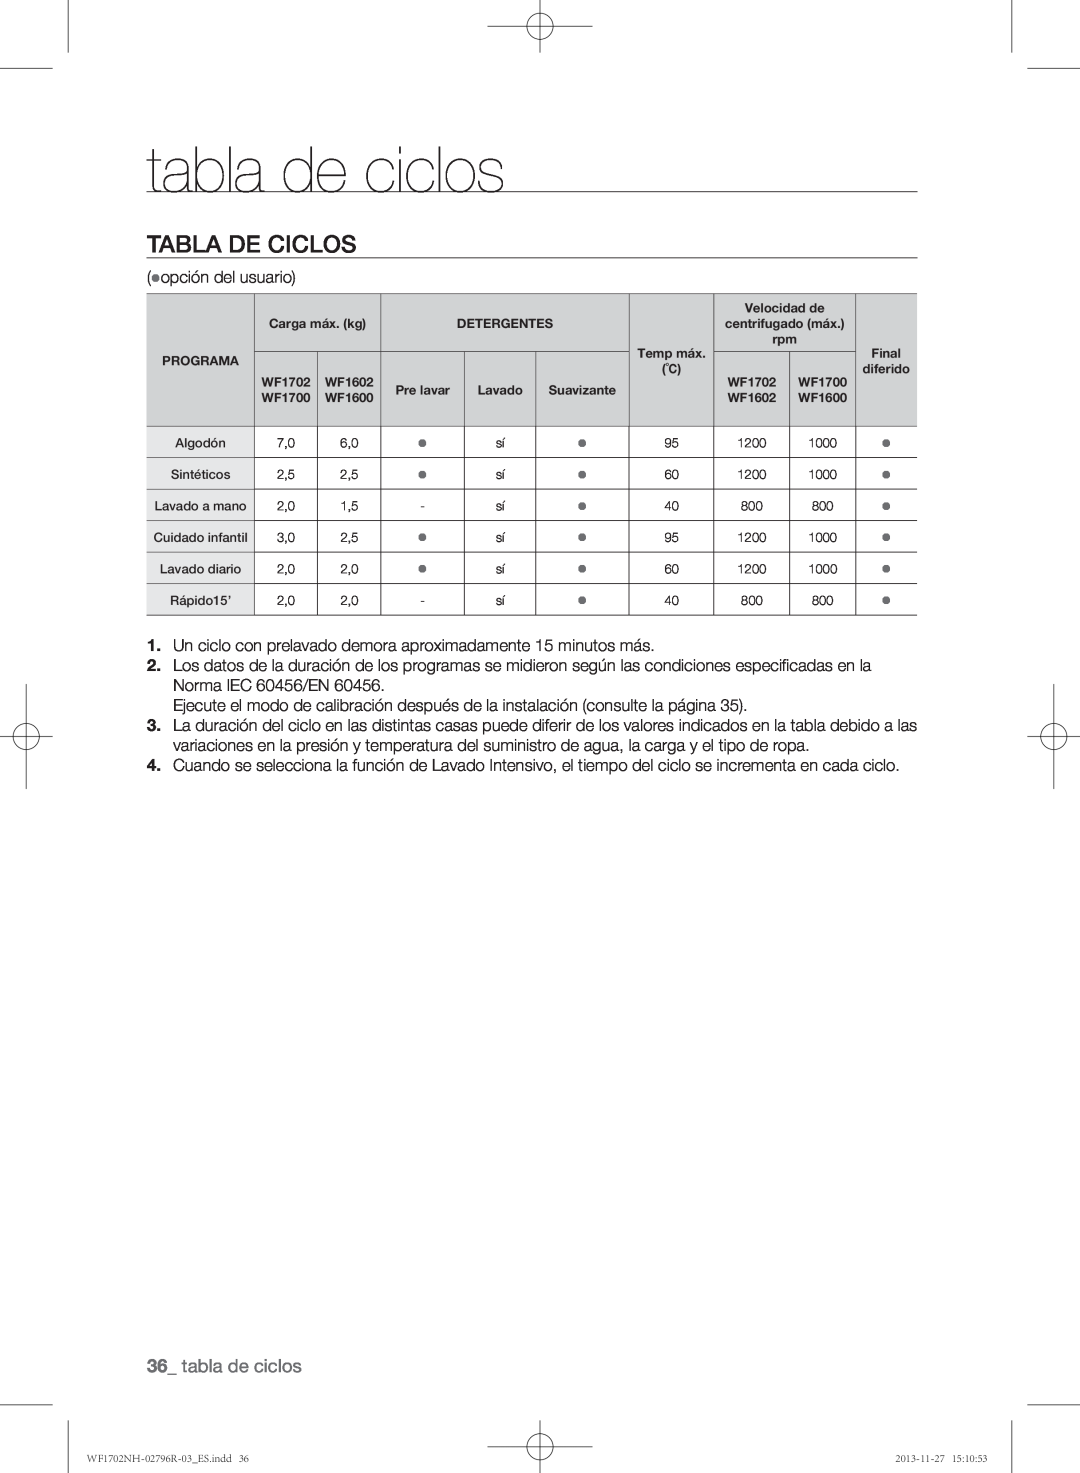 Samsung WF1702NHWG/XEC, WF1702NHW/XEC, WF1602NHW/XEC manual tabla de ciclos, Tabla de ciclos 